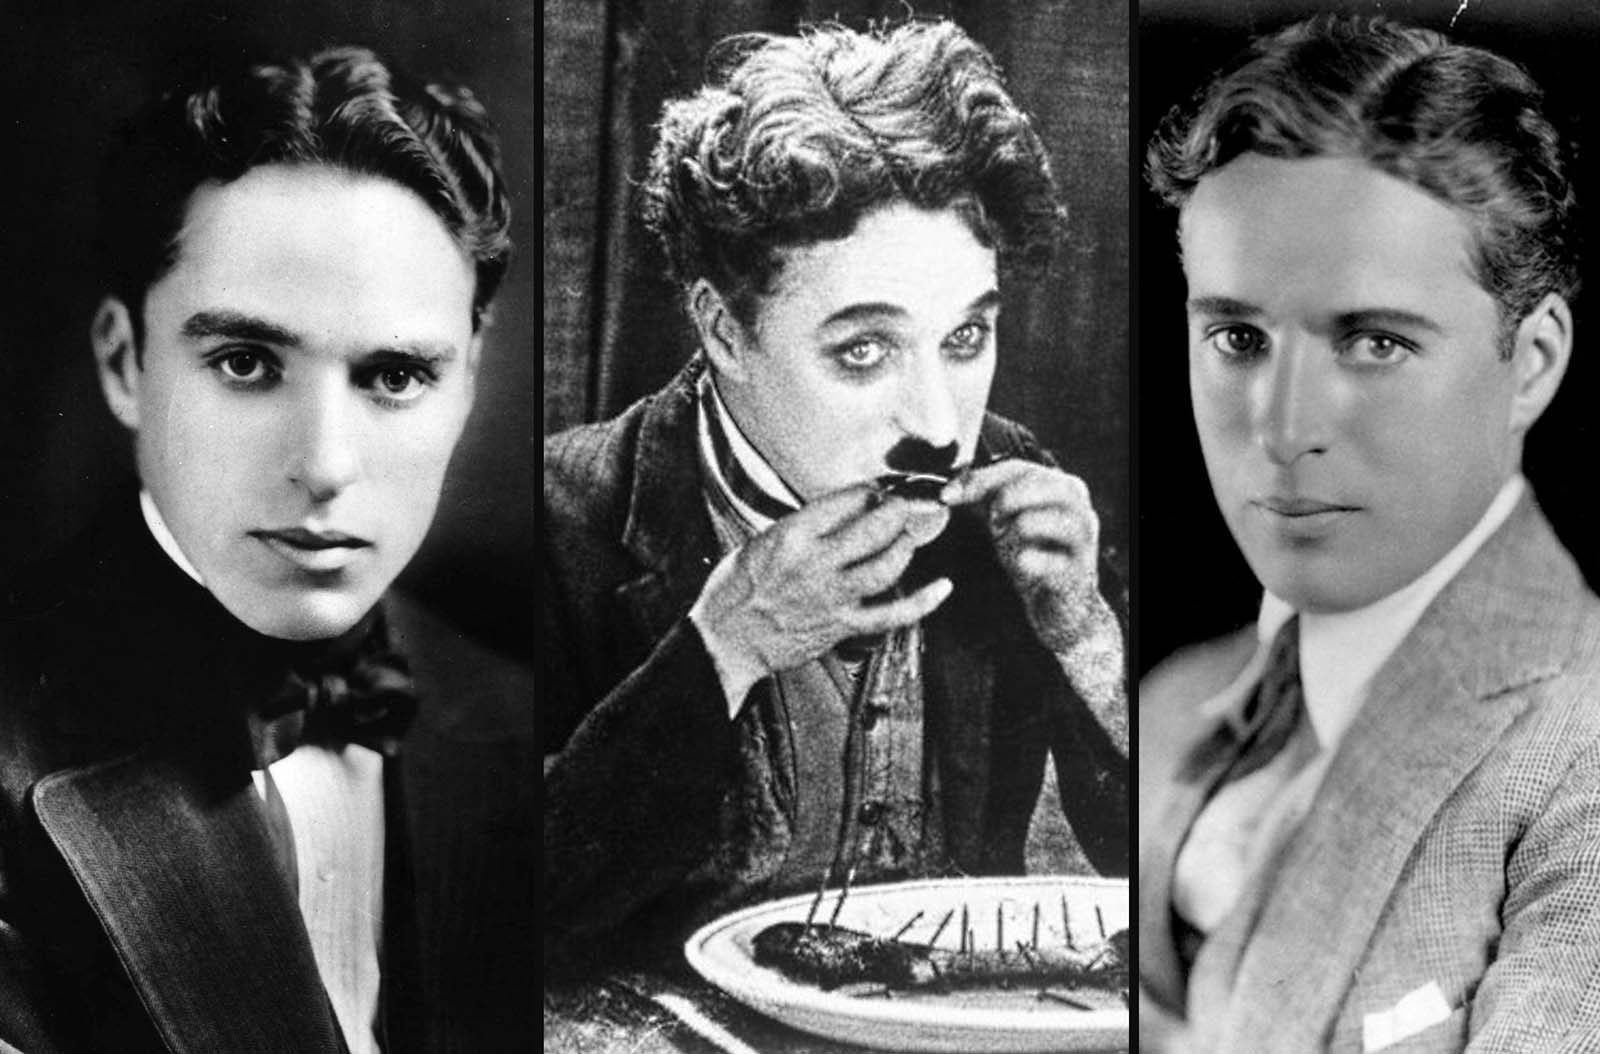 Encogerse de hombros tubería Encantador Fascinating Old Photos of a Young Charlie Chaplin Without His Iconic  Mustache and Hat - Rare Historical Photos